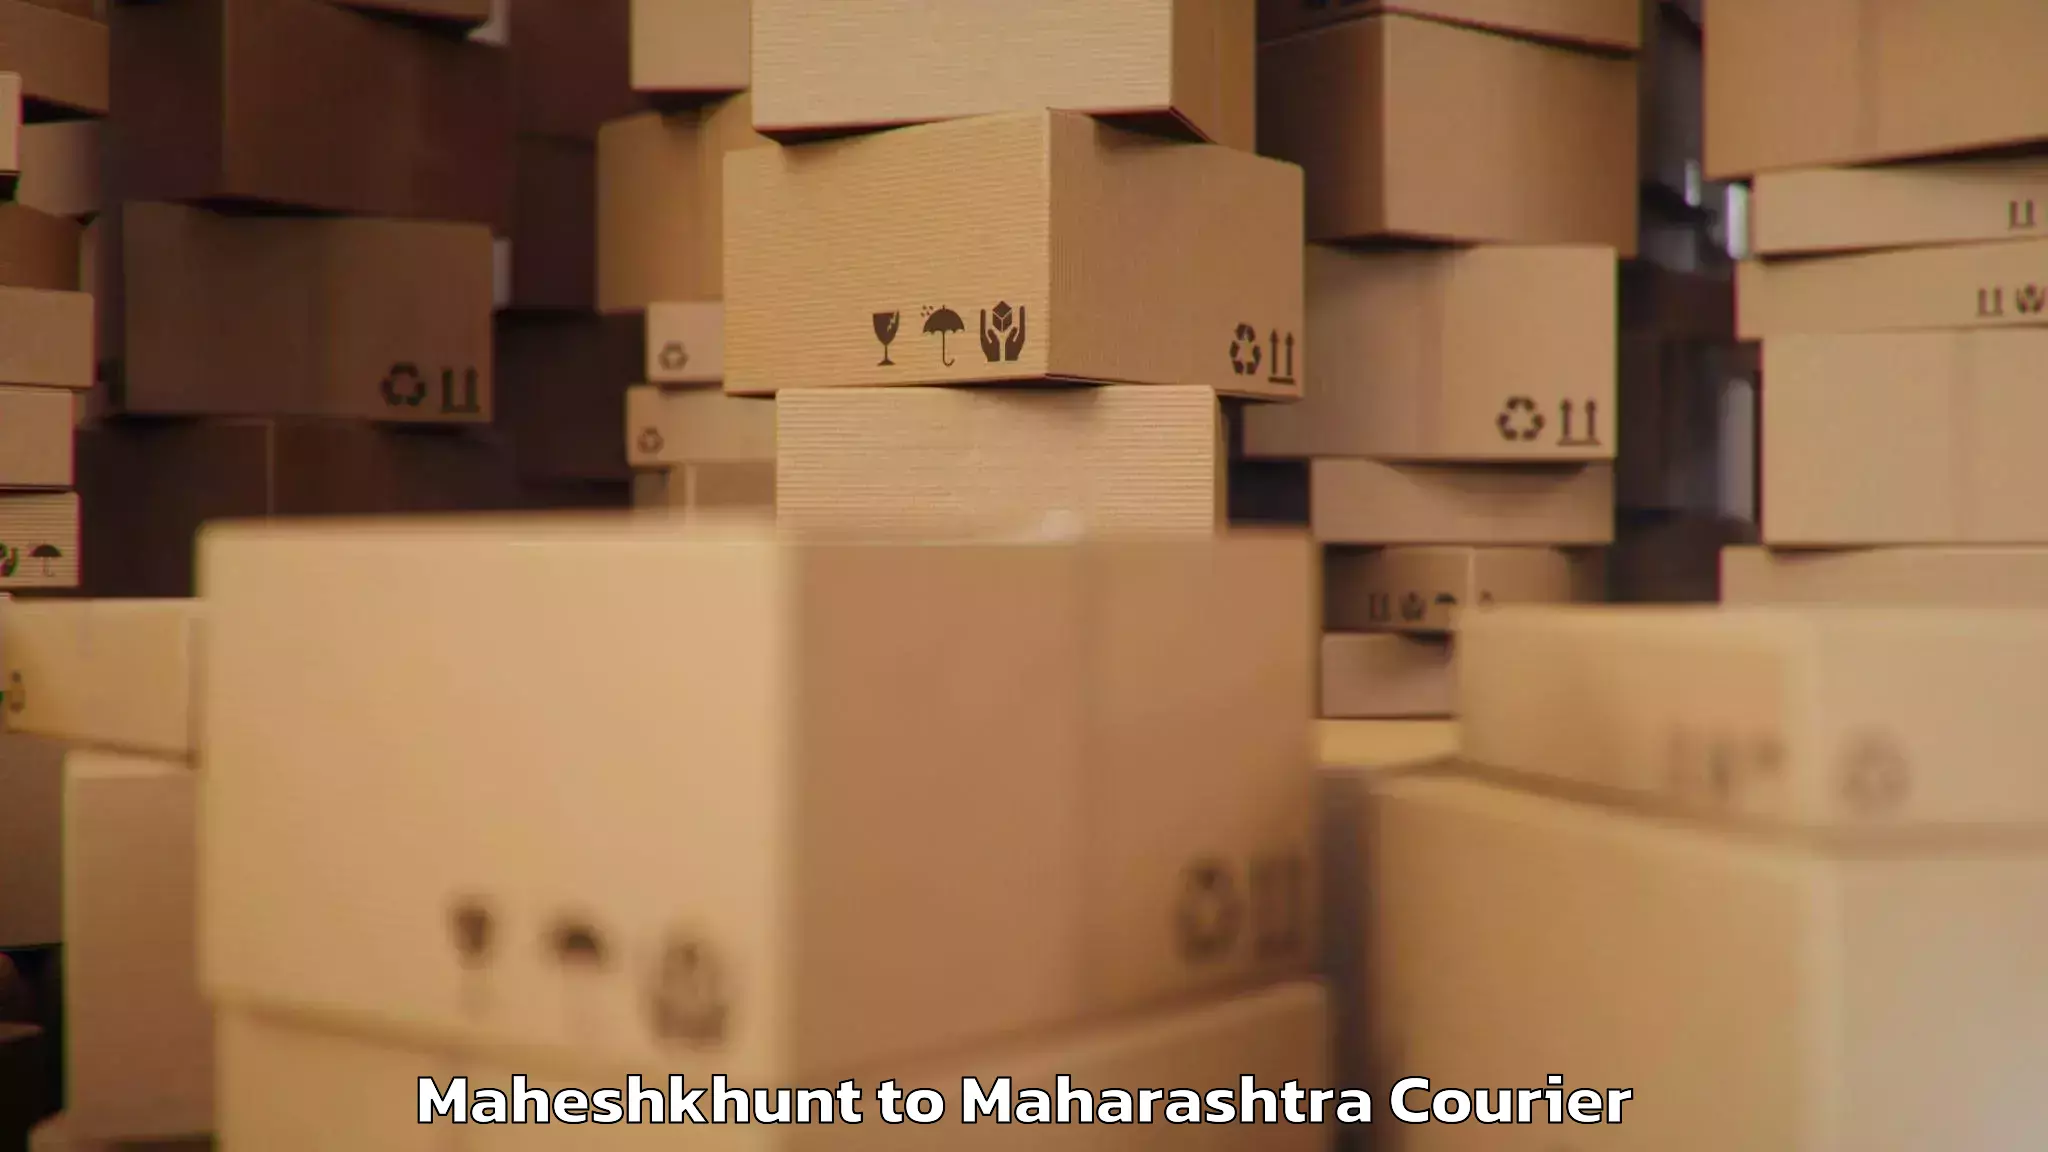 Luggage transfer service Maheshkhunt to Maharashtra